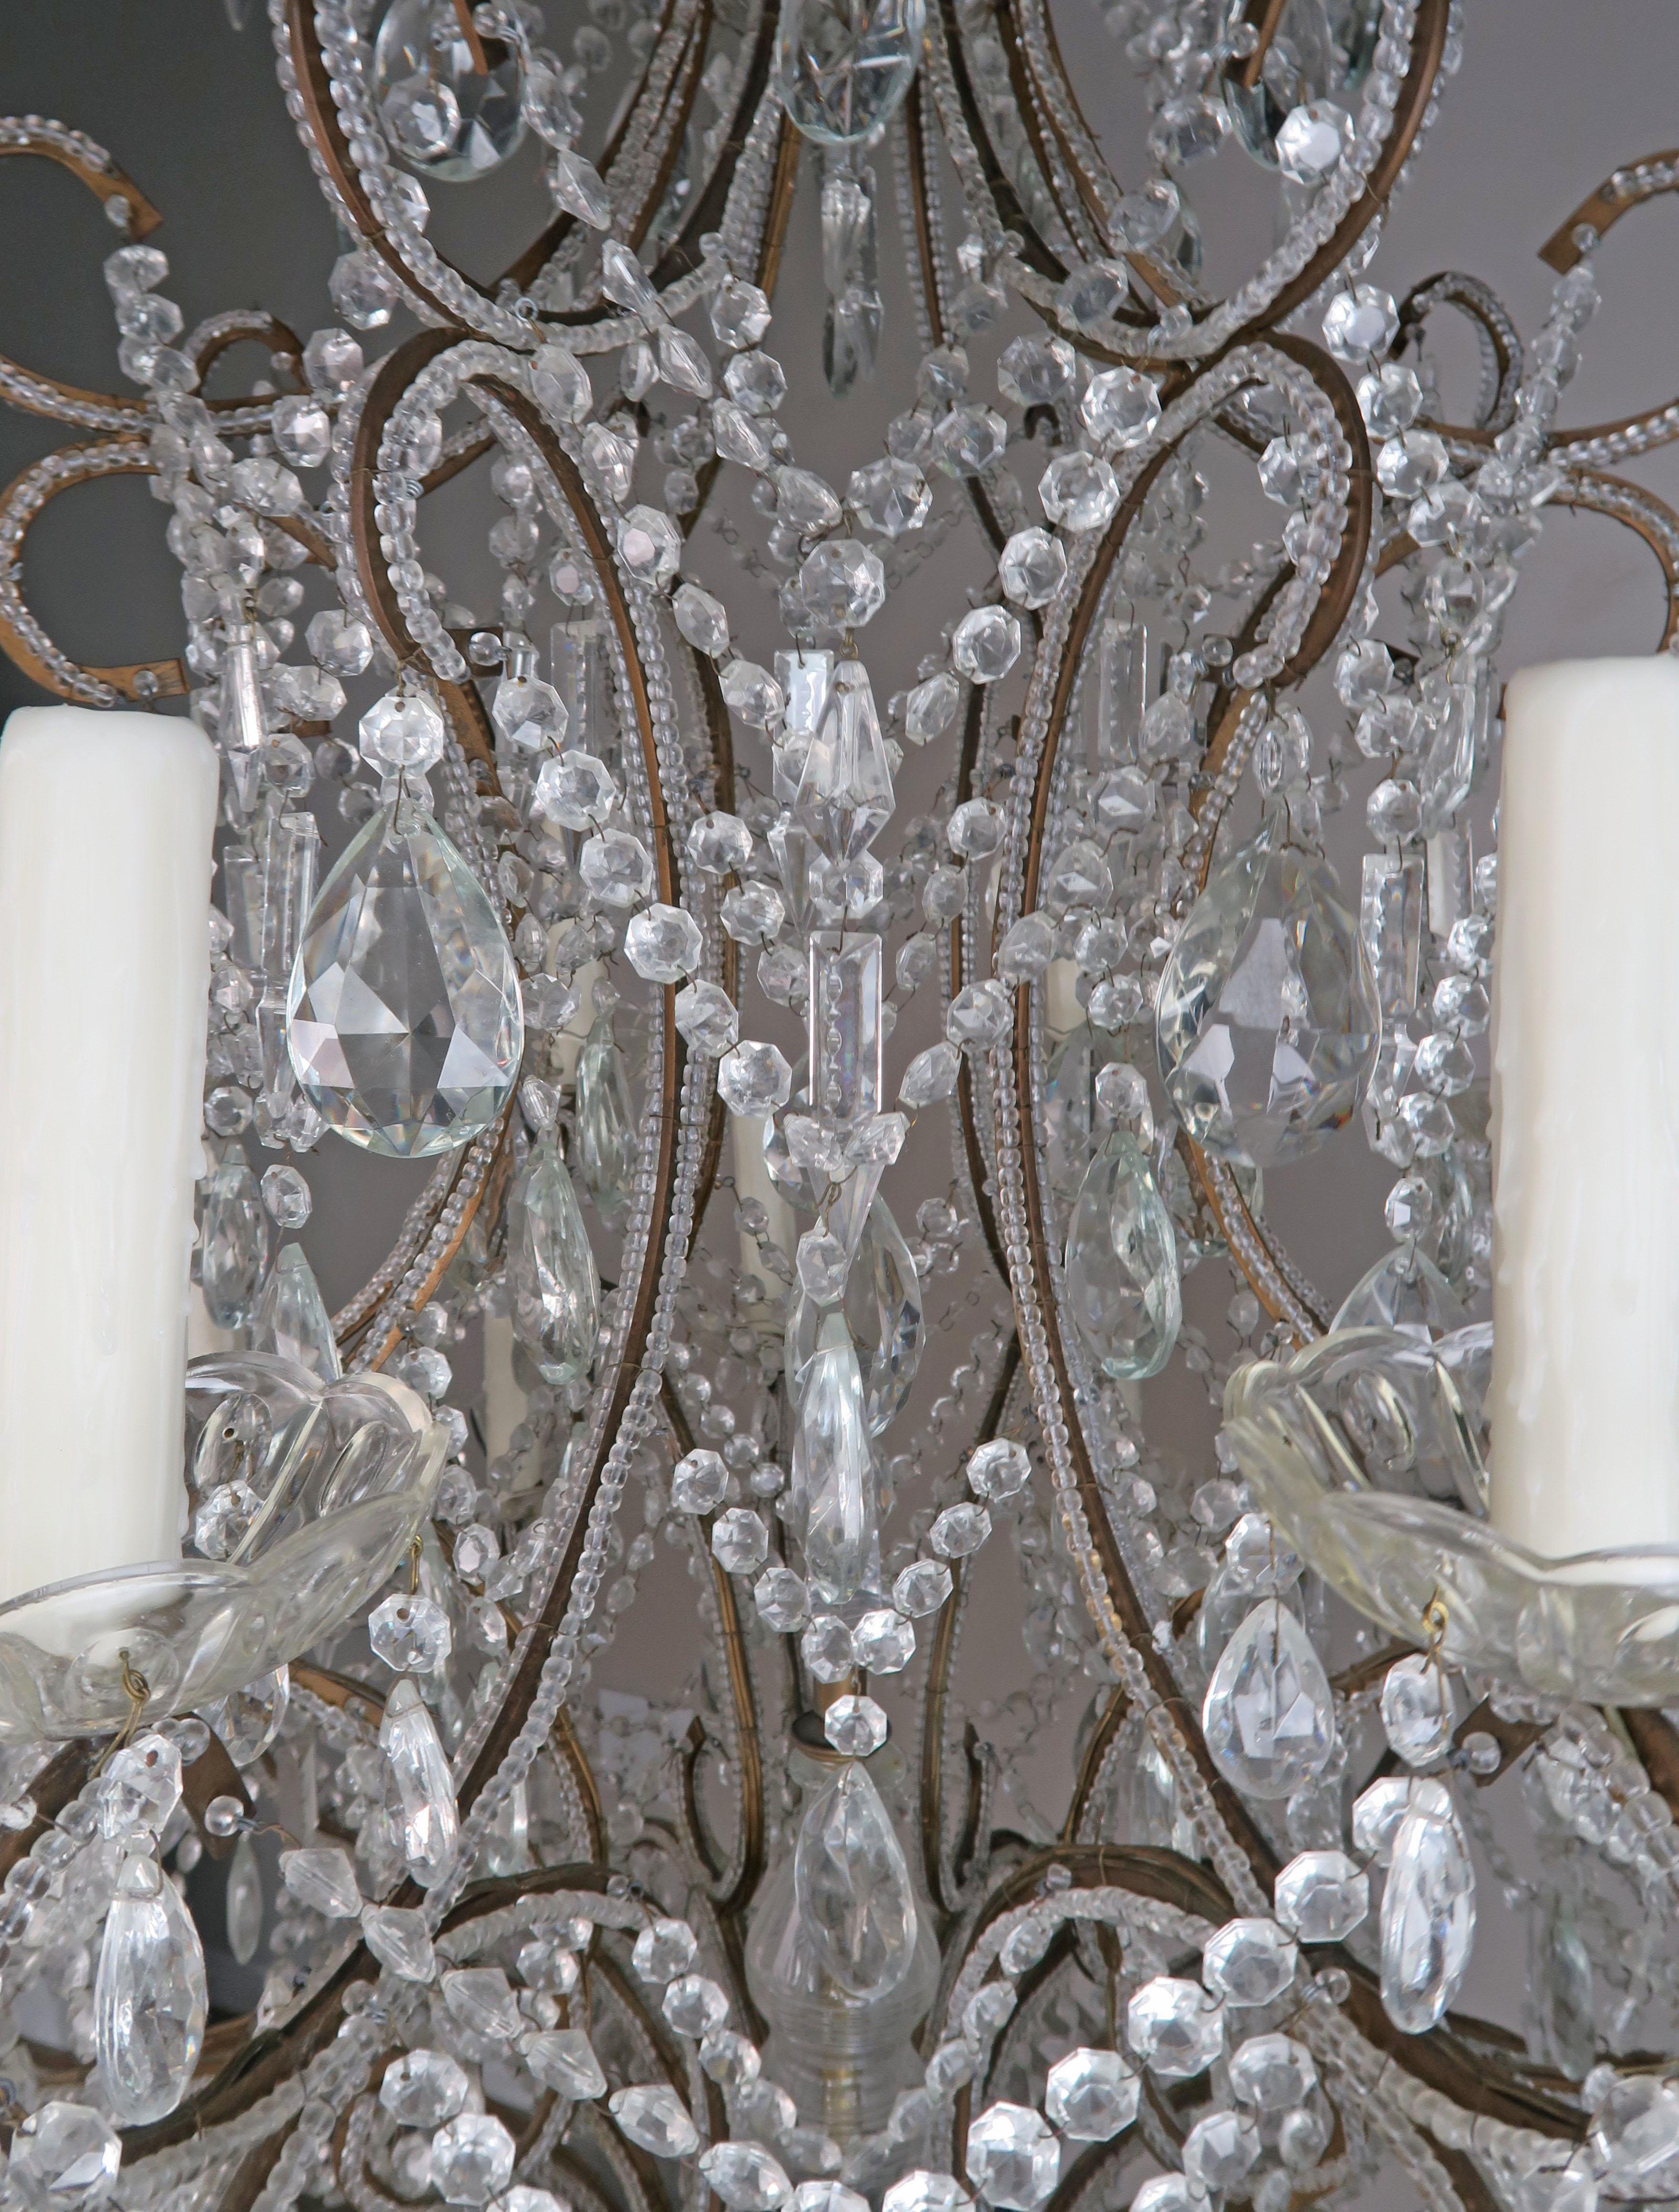 Kristall-Kronleuchter im Louis-XV-Stil (Metall)